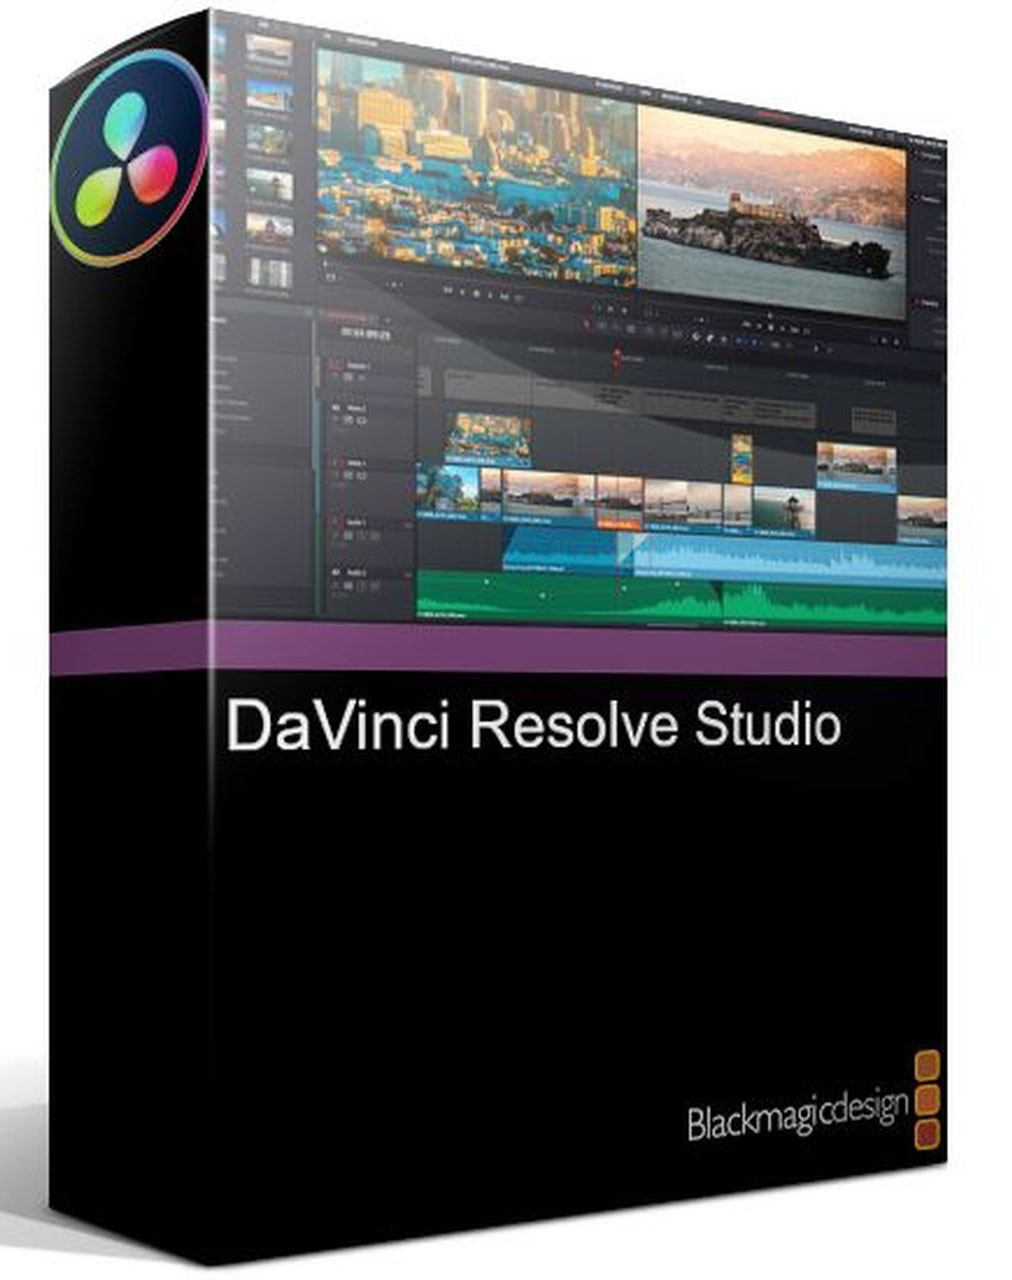 Da Vinci Resolve Studio – nye træningsvideoer online